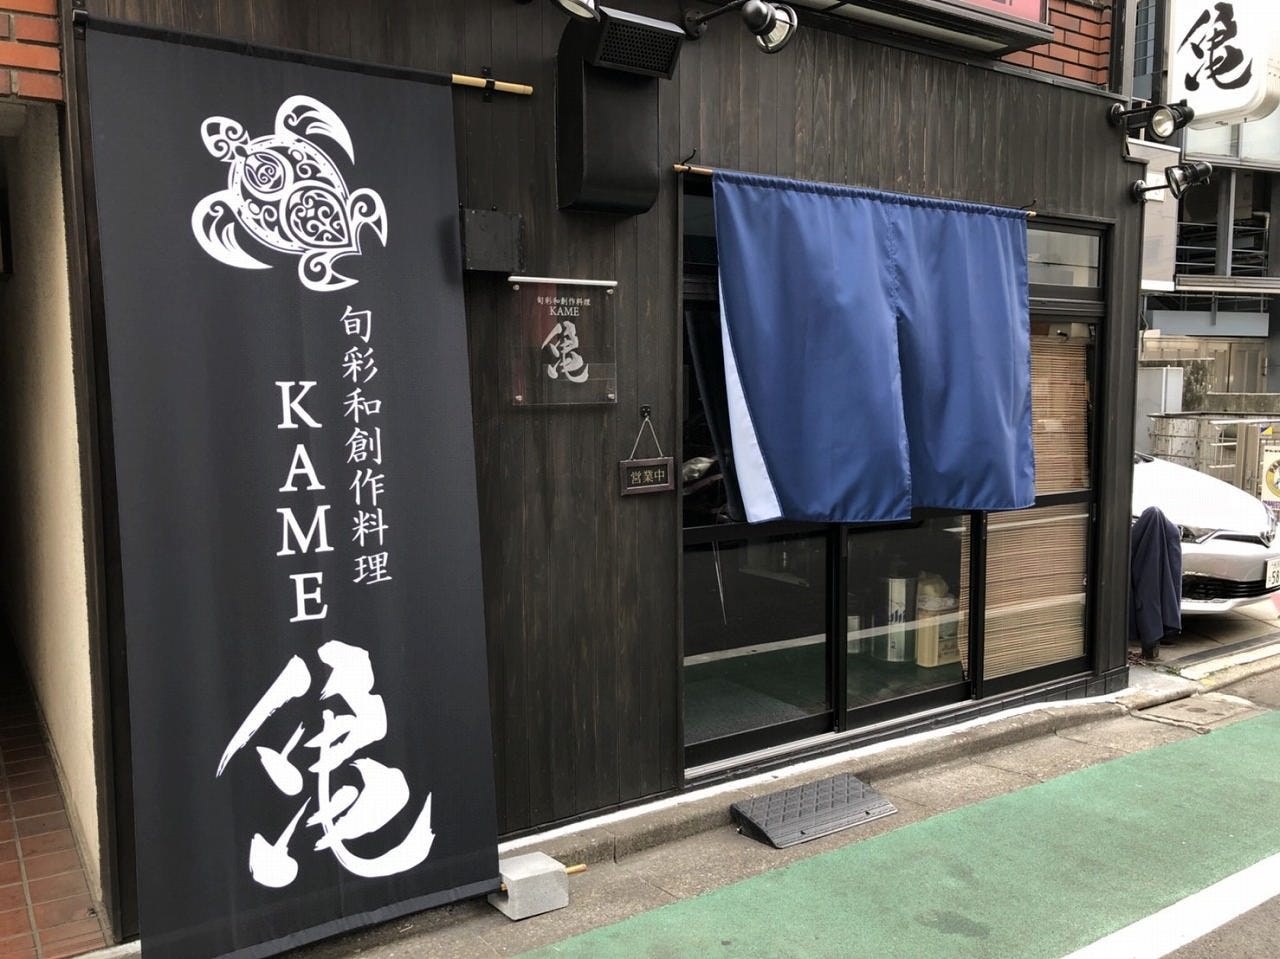 21年 最新グルメ 旬彩和創作料理 亀 池袋 レストラン カフェ 居酒屋のネット予約 東京版